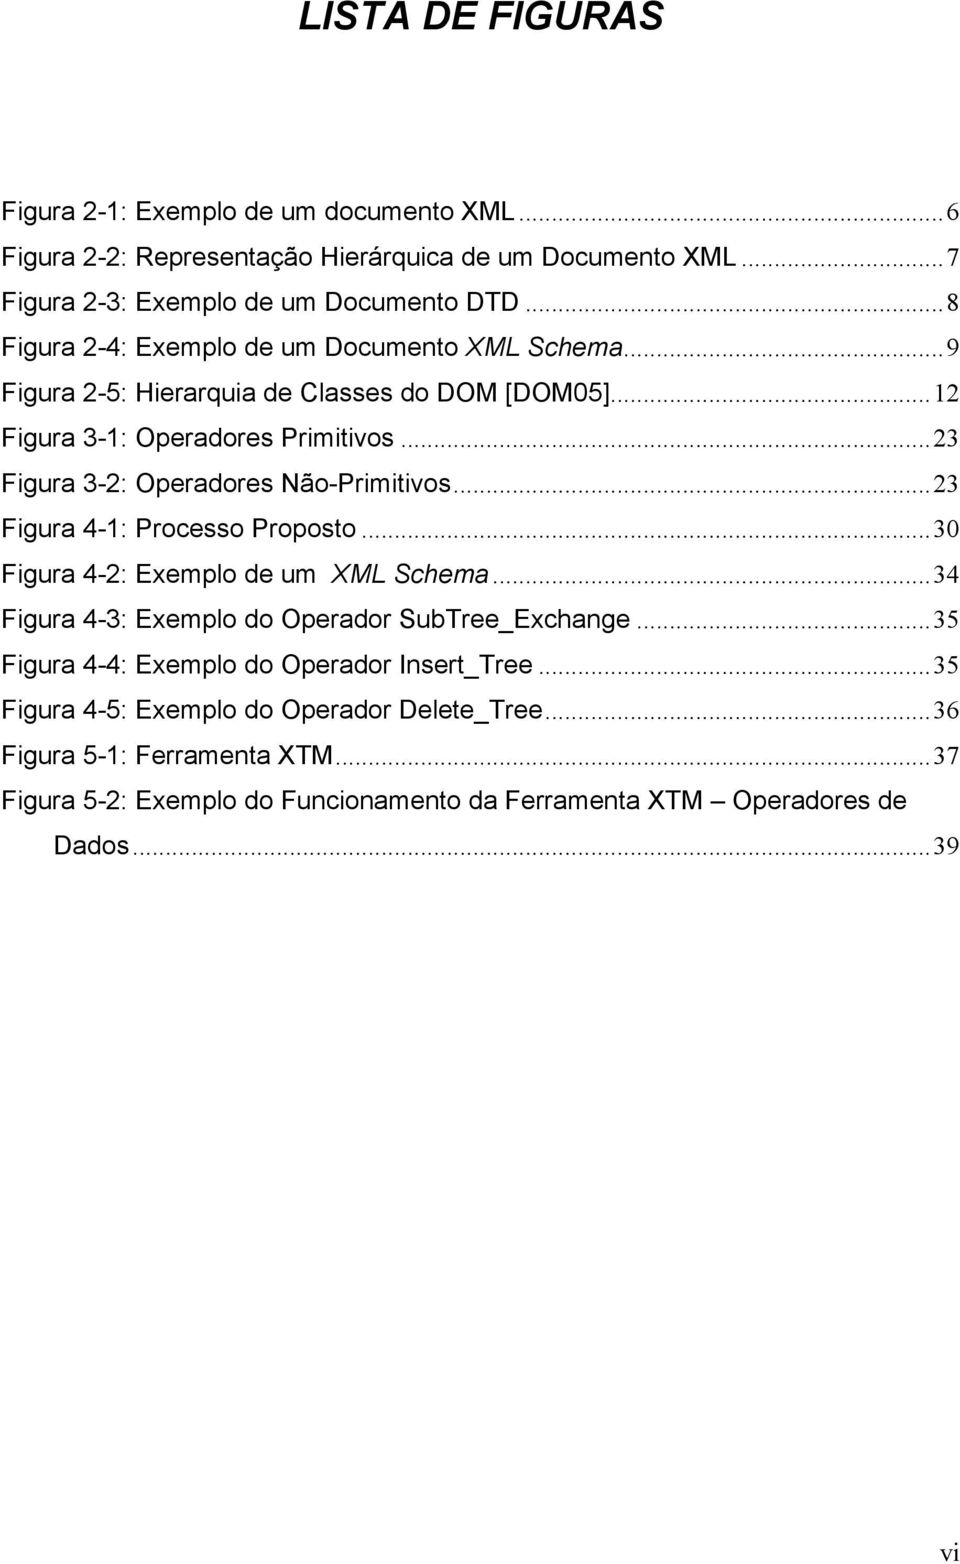 ..23 Figura 3-2: Operadores Não-Primitivos...23 Figura 4-1: Processo Proposto...30 Figura 4-2: Exemplo de um XML Schema...34 Figura 4-3: Exemplo do Operador SubTree_Exchange.